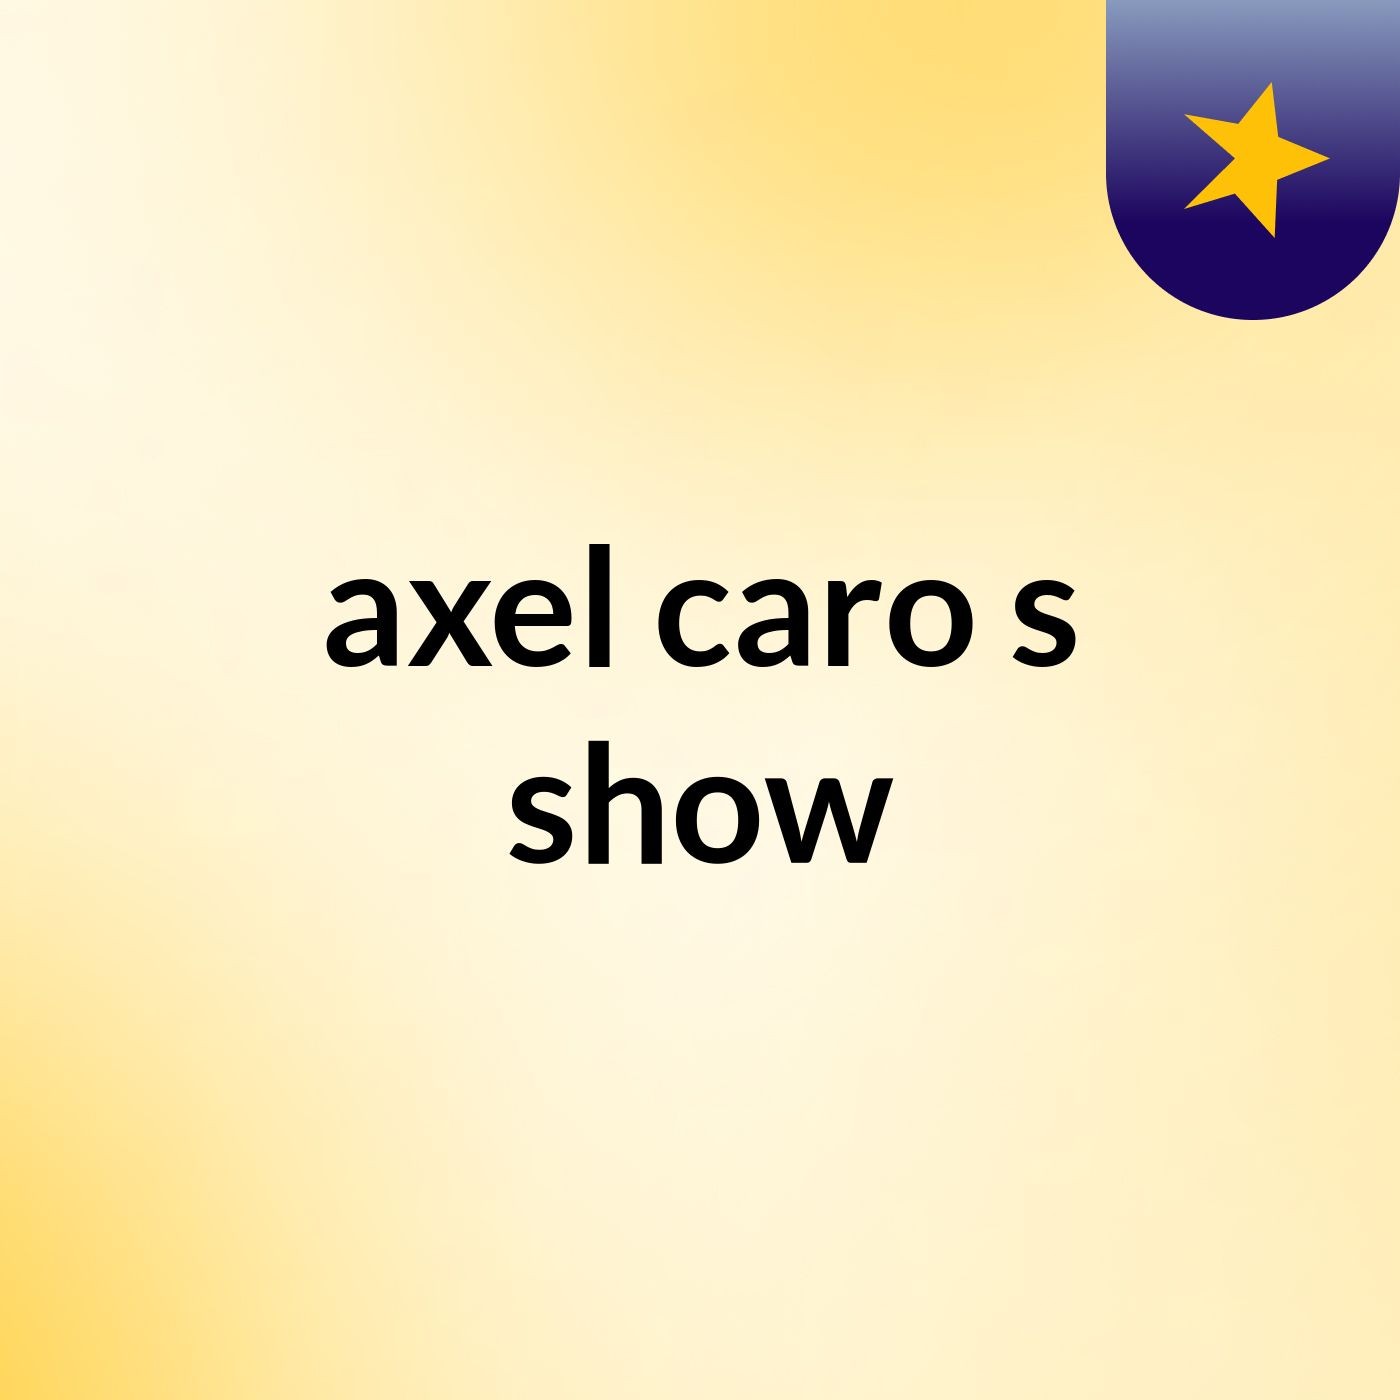 axel caro's show